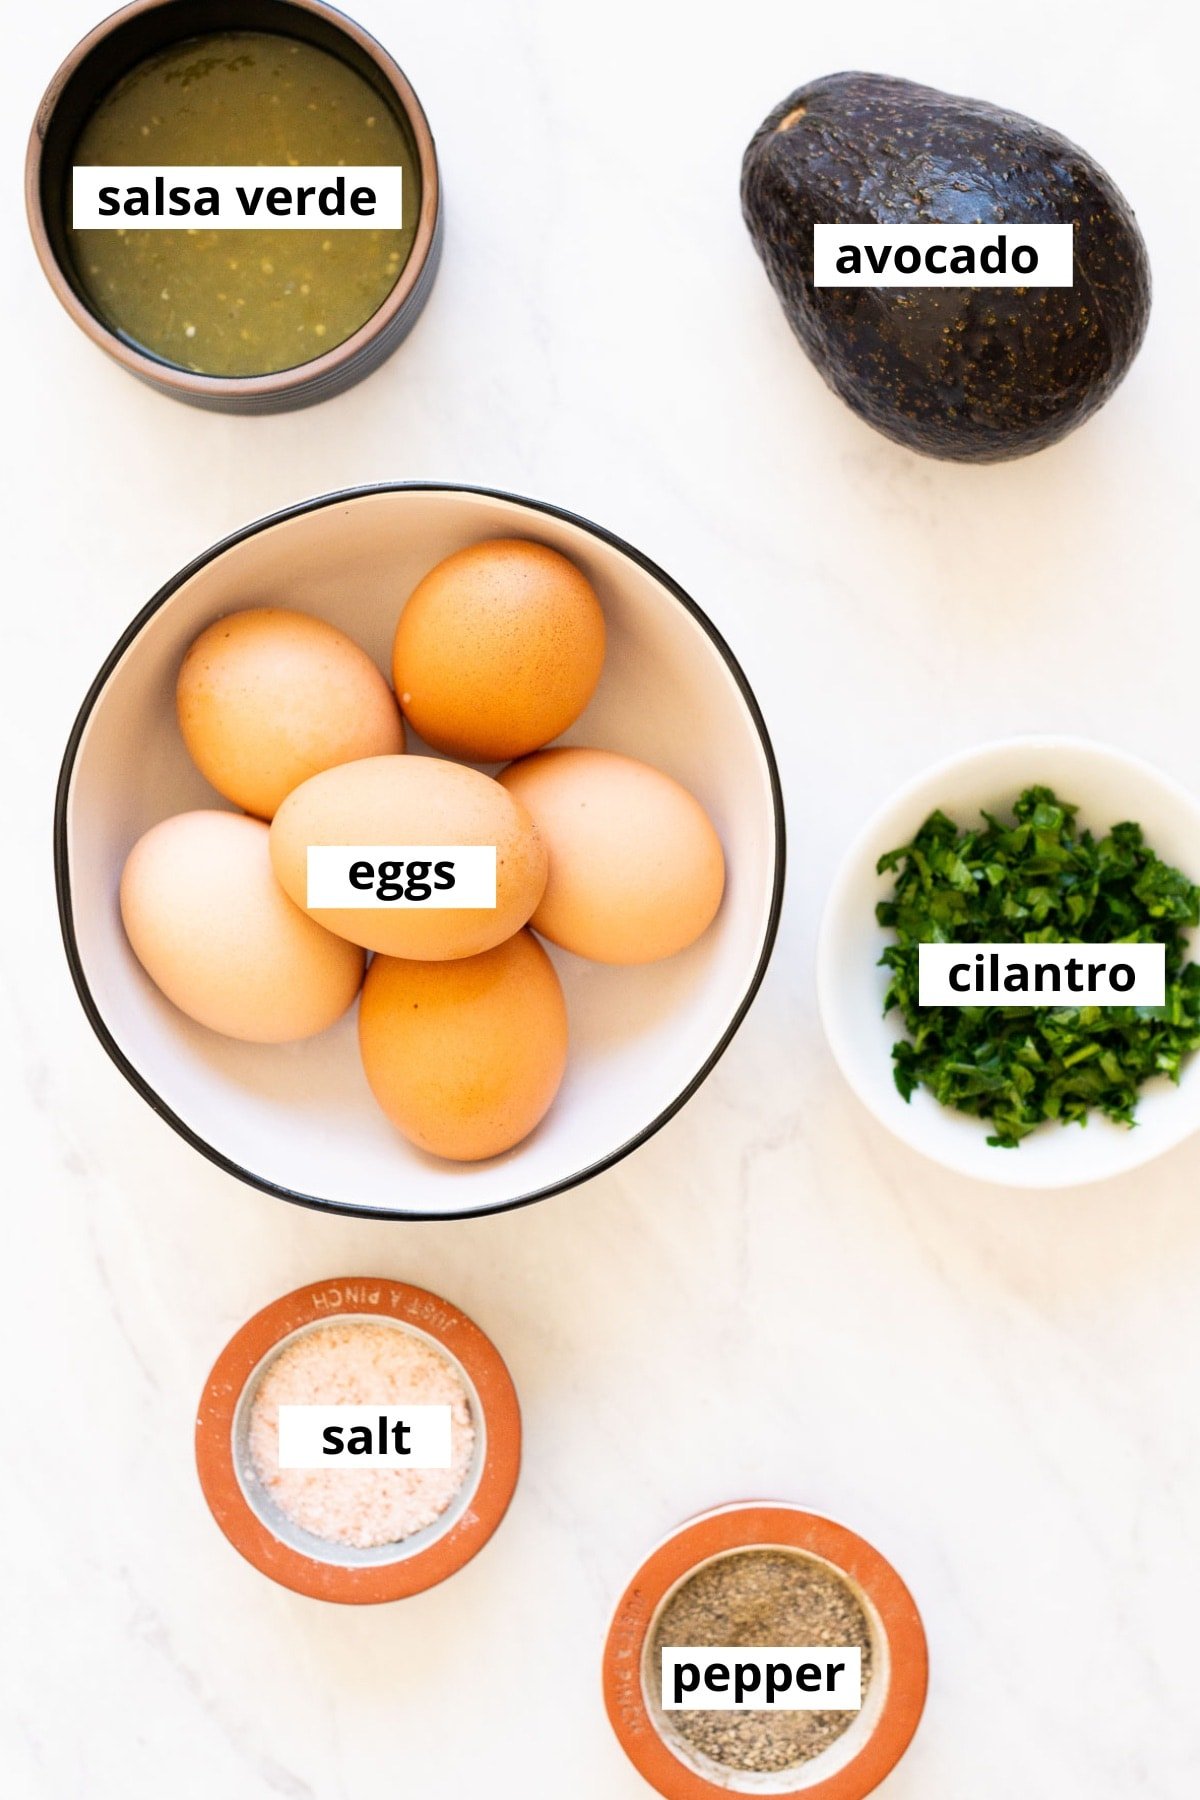 Eggs, cilantro, salsa verde, avocado, salt and pepper.